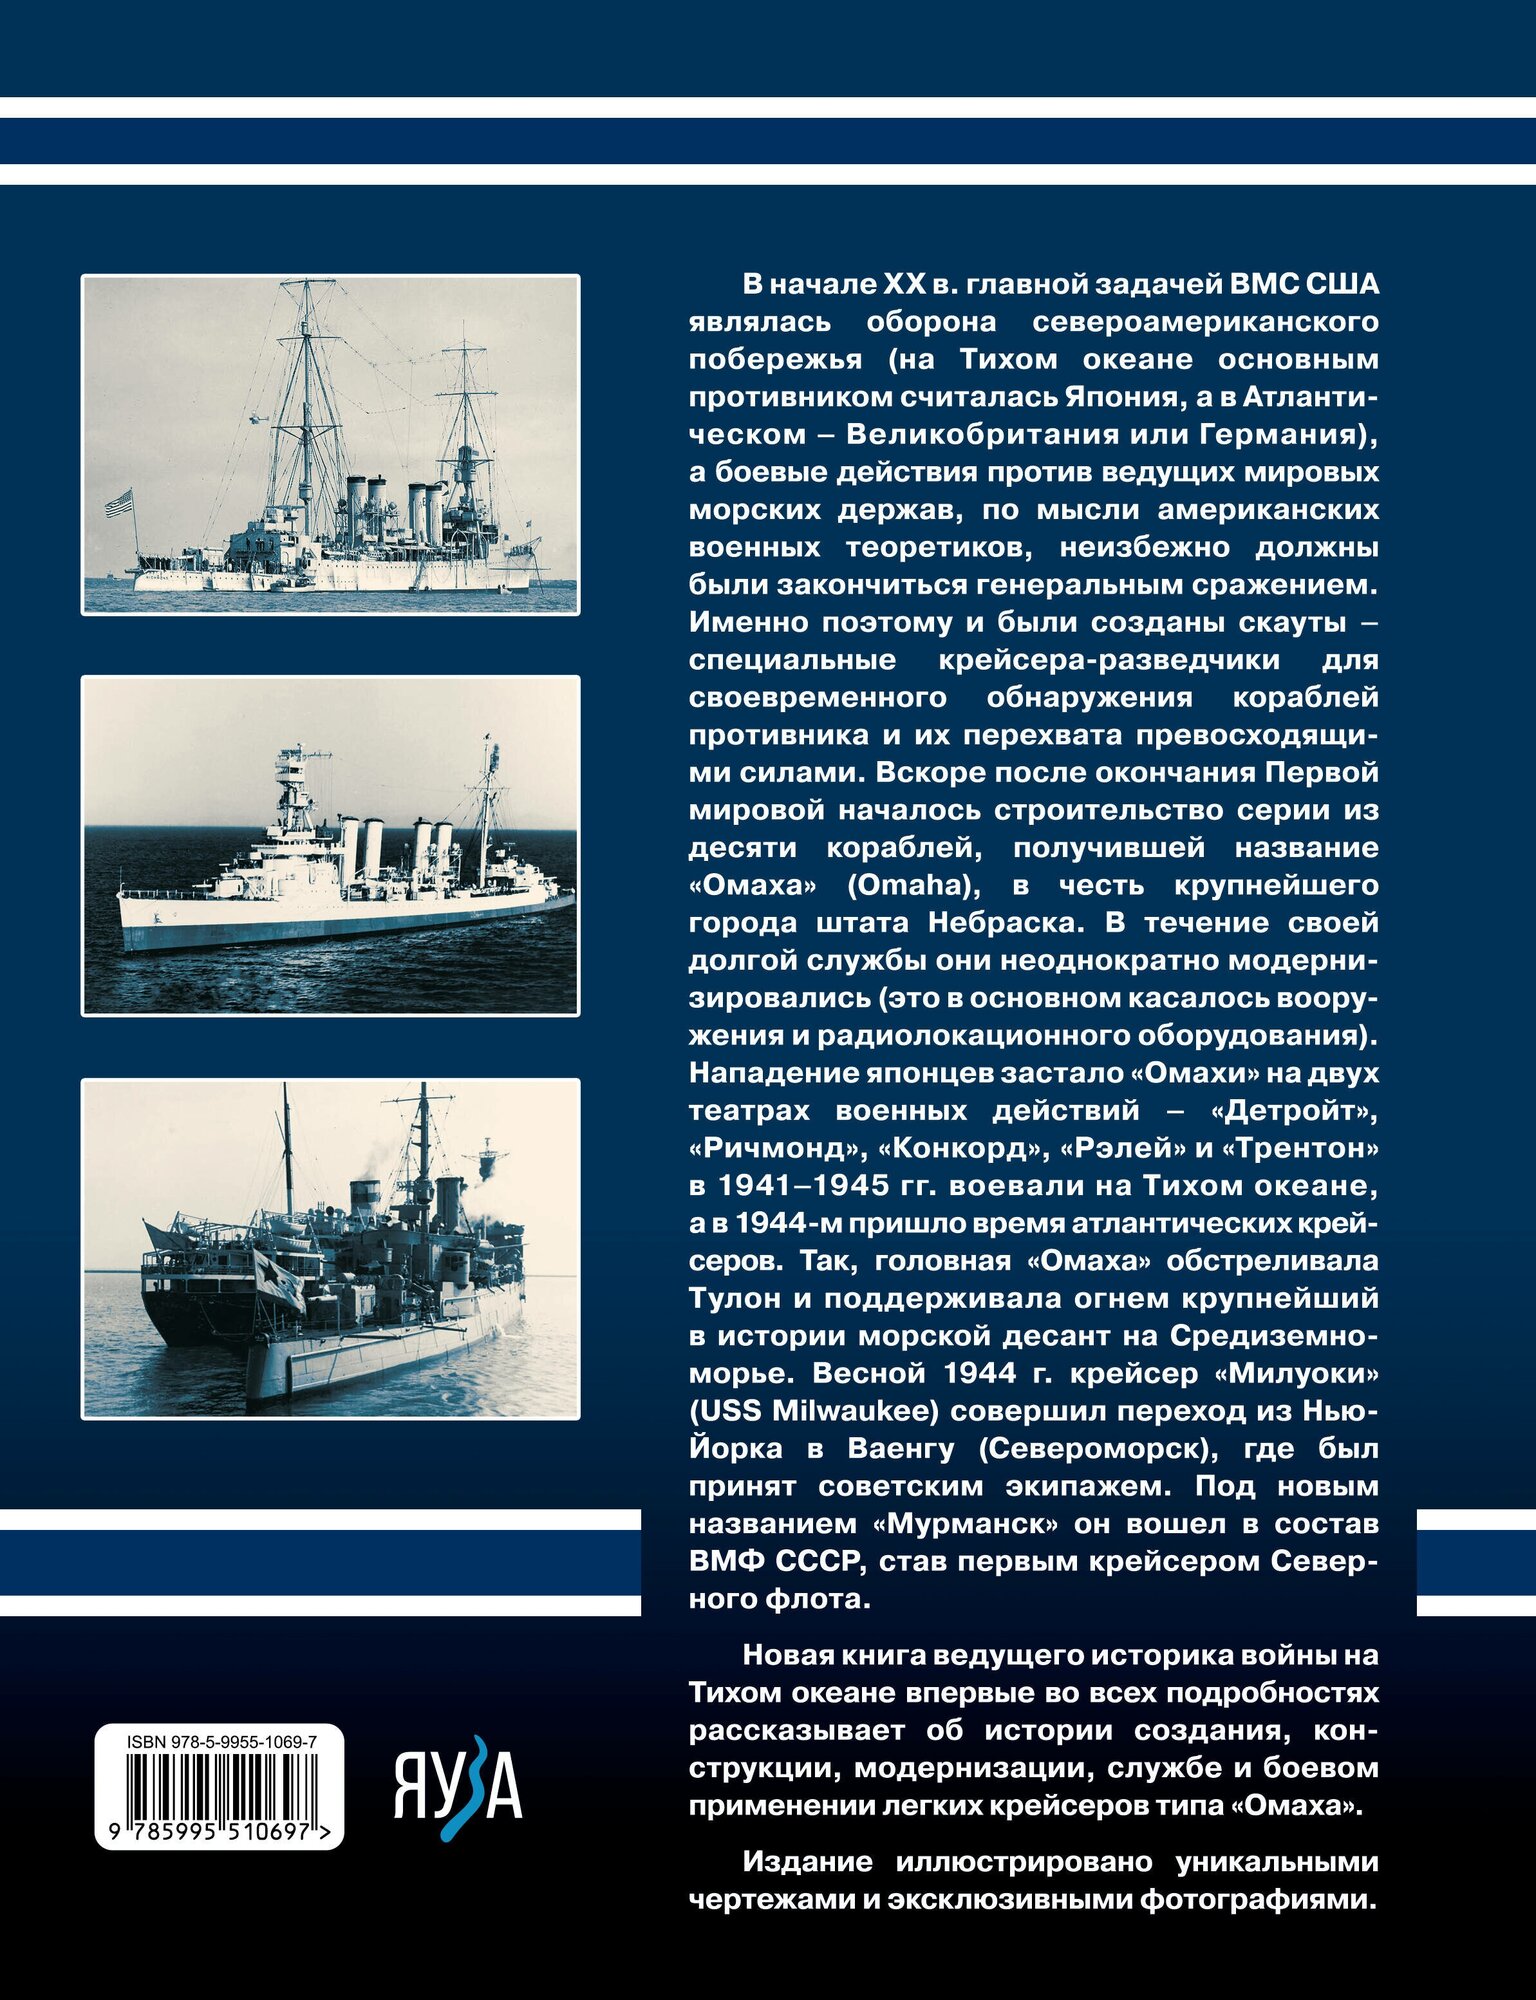 Легкие крейсера типа "Омаха". Крейсер "Мурманск" и его американские систершипы - фото №2